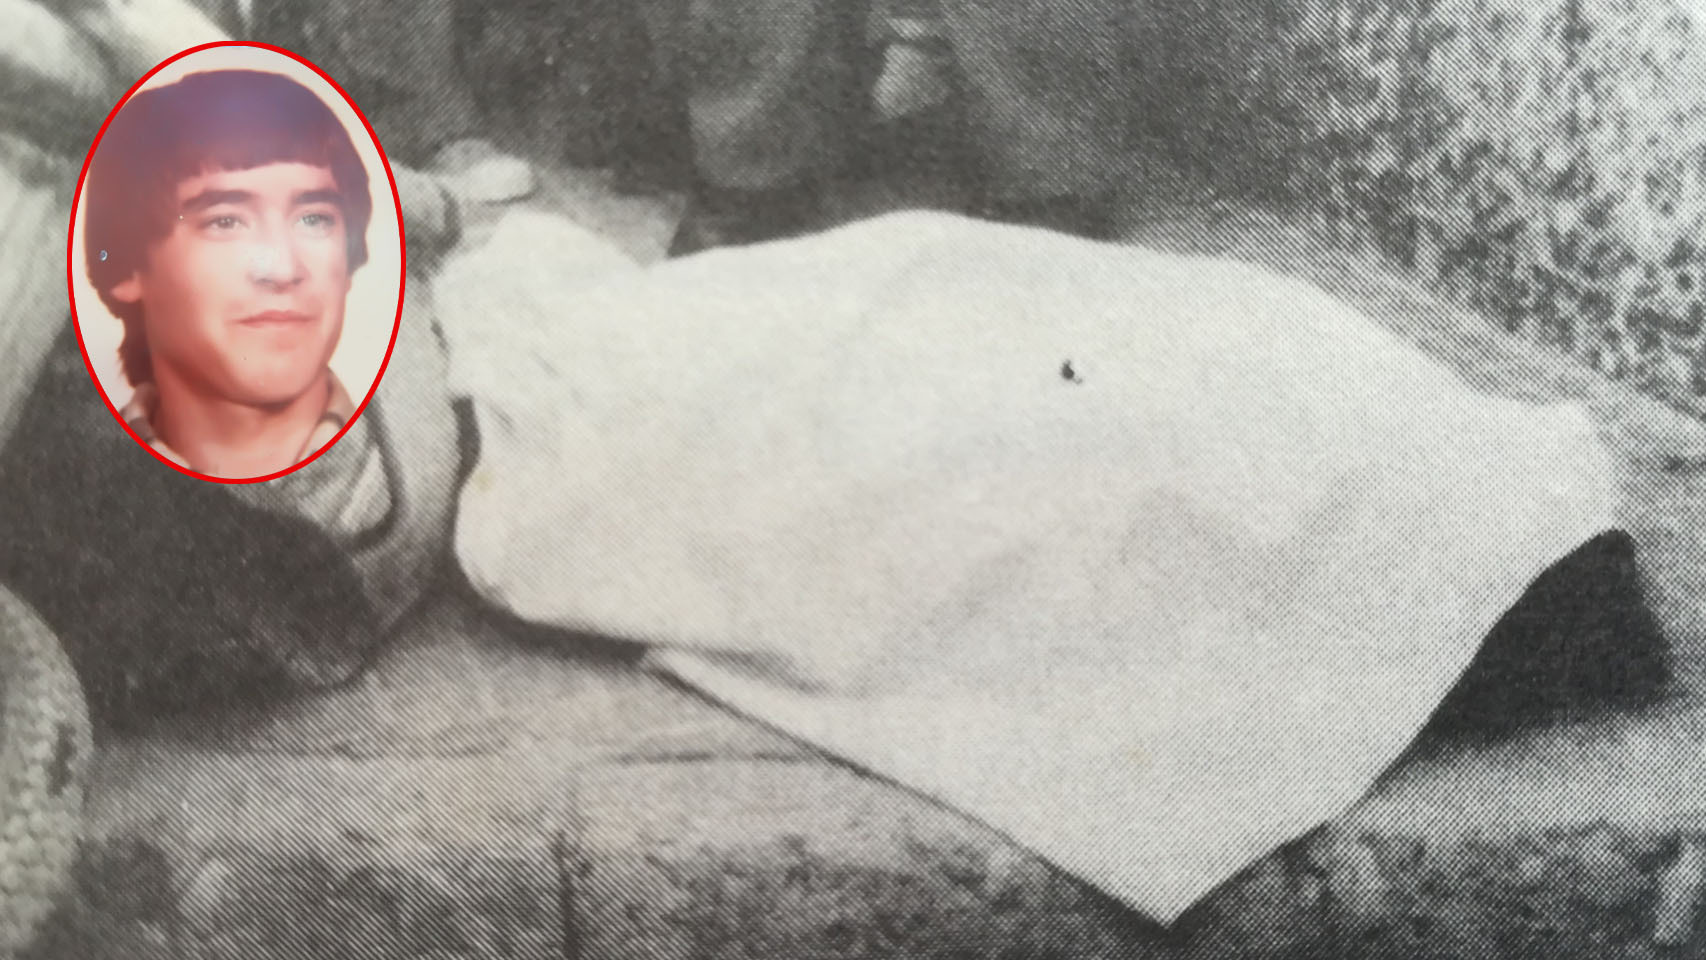 Ignacio, muerto, envuelto en una sábana.